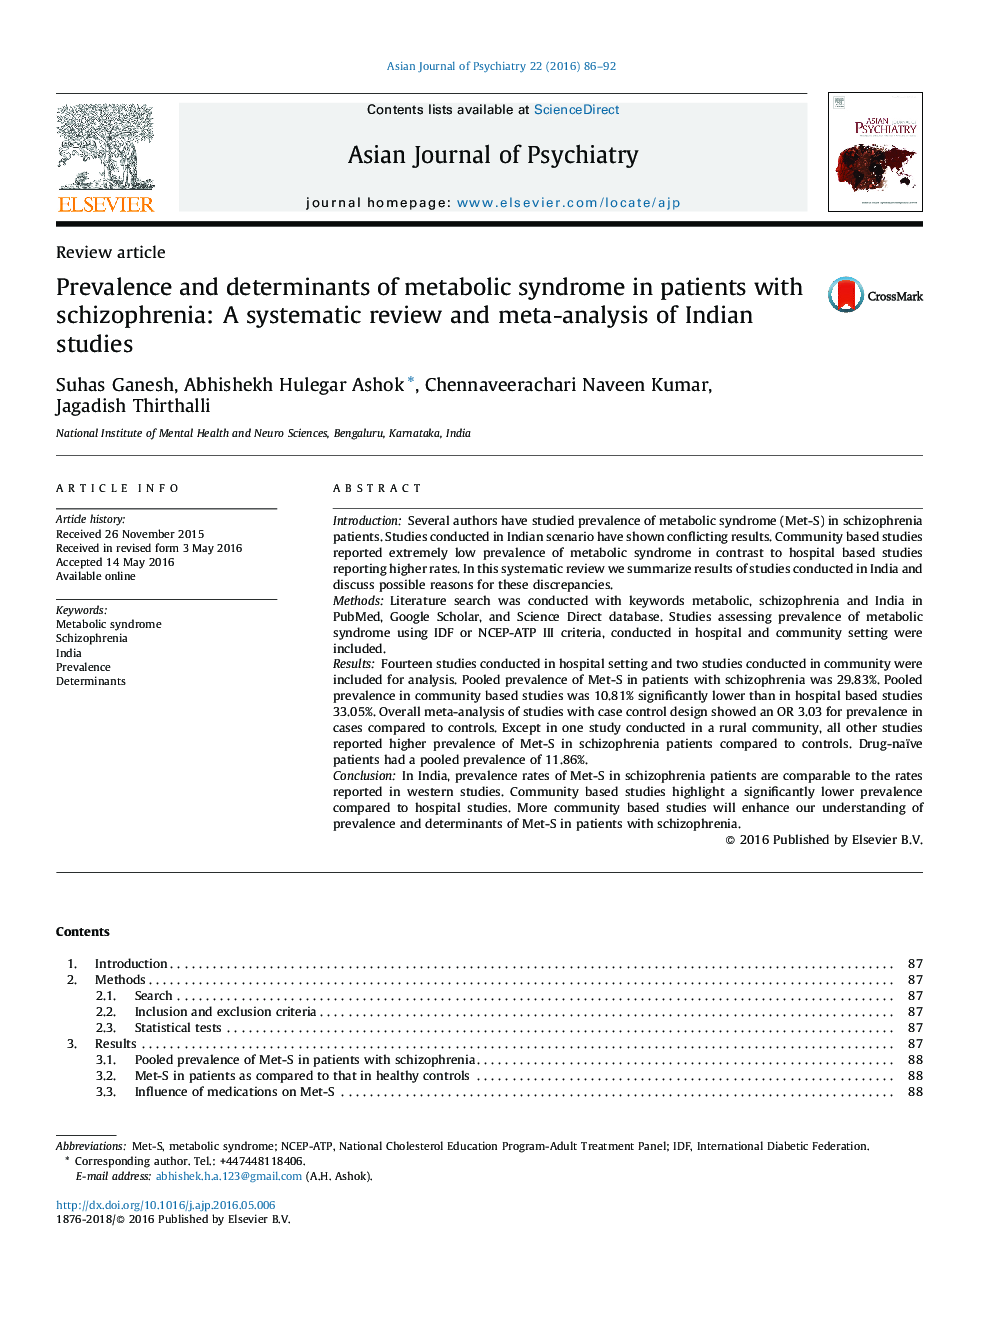 شیوع و عوامل موثر بر سندرم متابولیک در بیماران مبتلا به اسکیزوفرنی: بررسی سیستماتیک و متاآنالیز از مطالعات هند